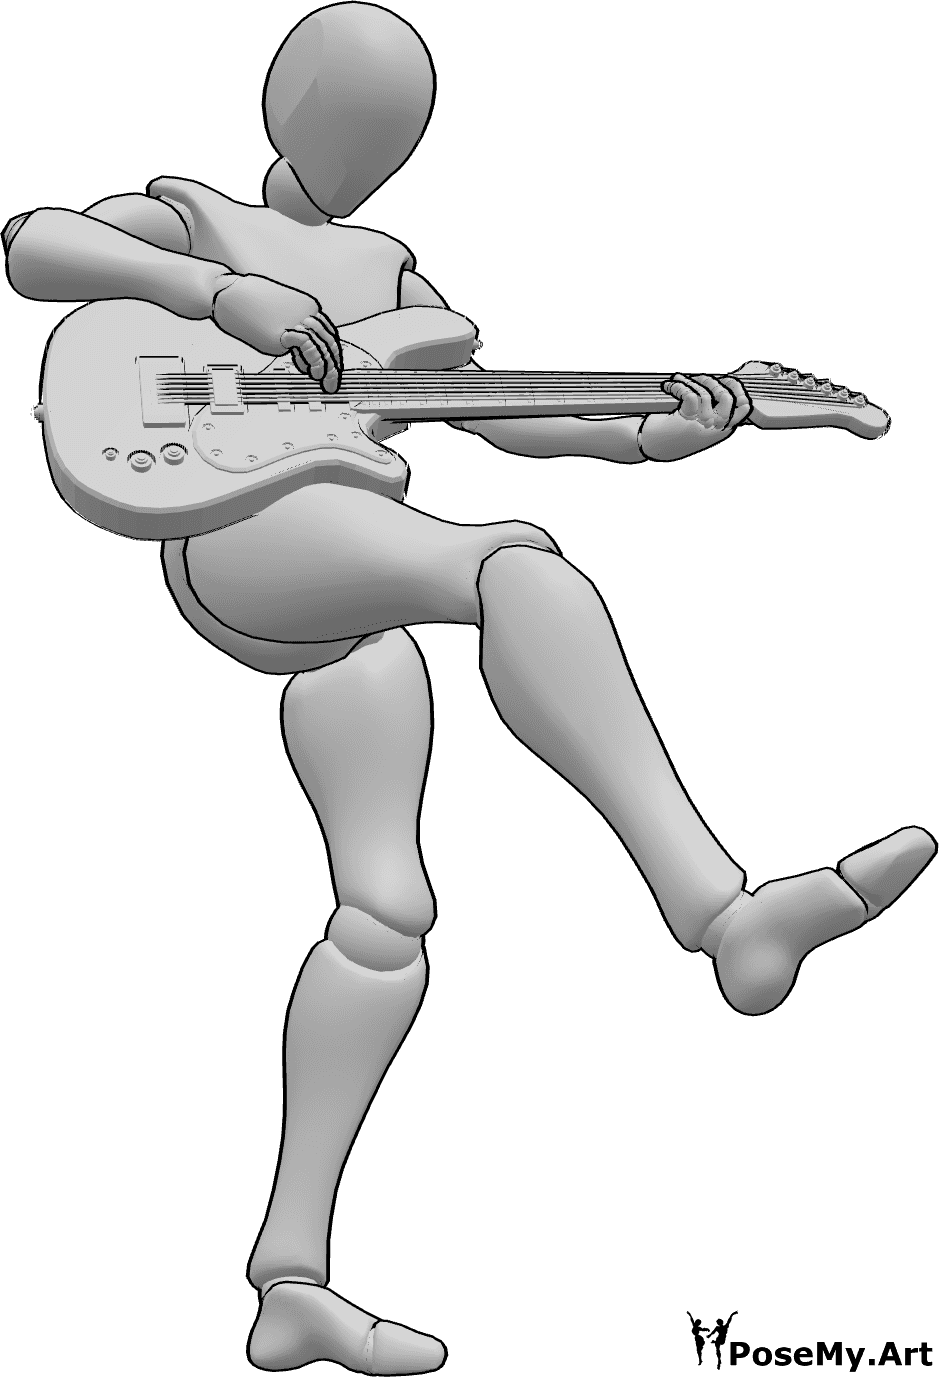 Posen-Referenz- Weiblich tanzen spielen Pose - Frau tanzt, steht auf dem linken Fuß und hebt ihr rechtes Bein, während sie E-Gitarre spielt